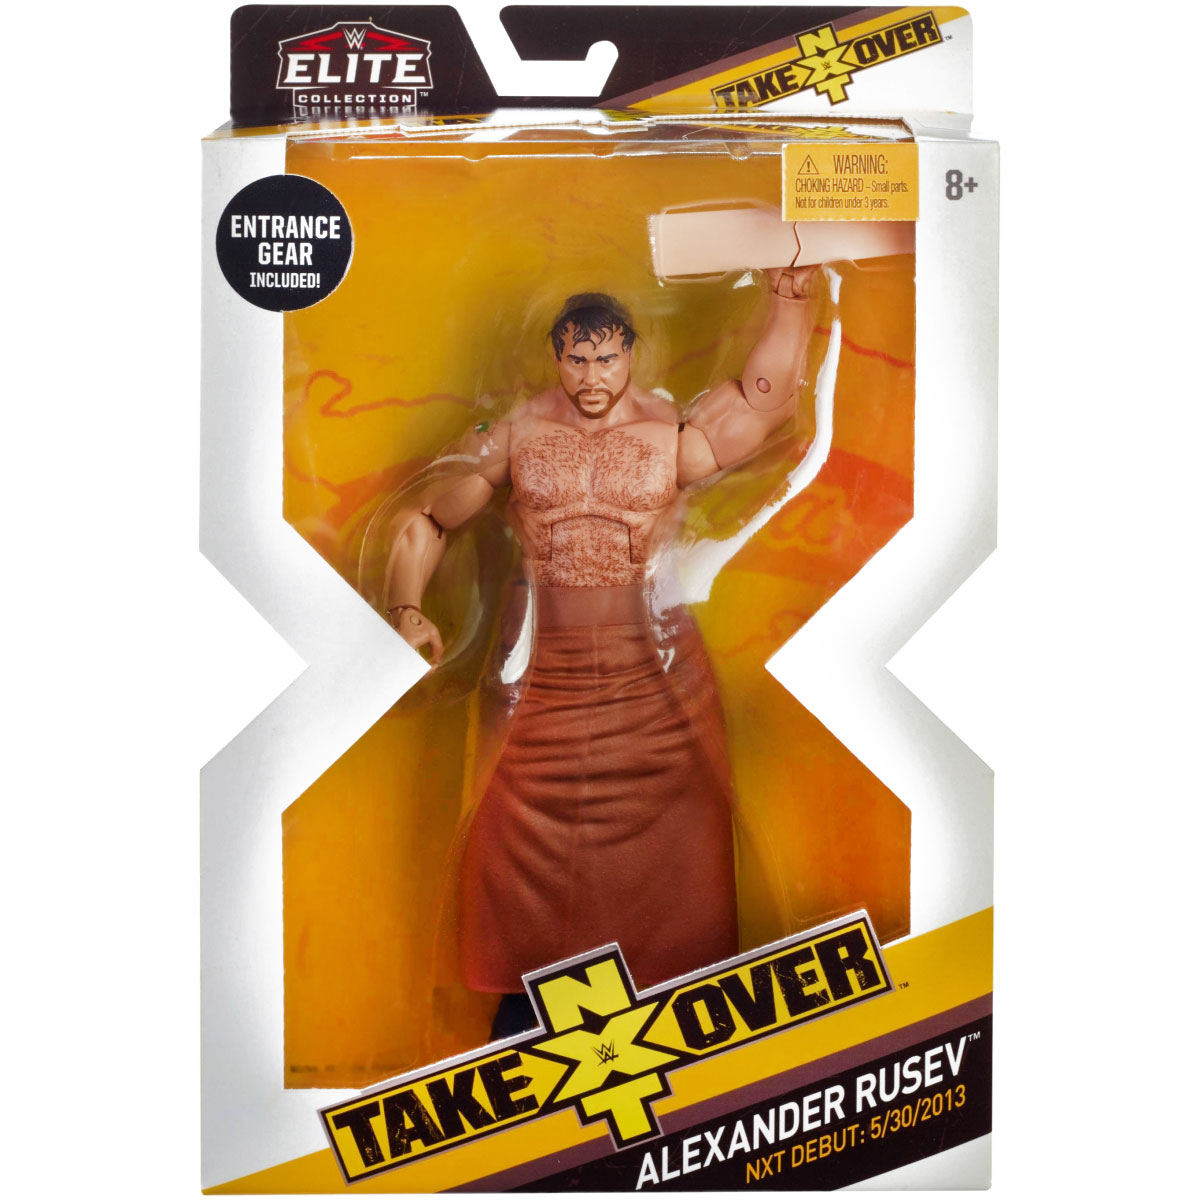 Mattel WWE Wrestling Elite NXT Takeover Alexander Rusev Action Figure 8879616028 for sale online 